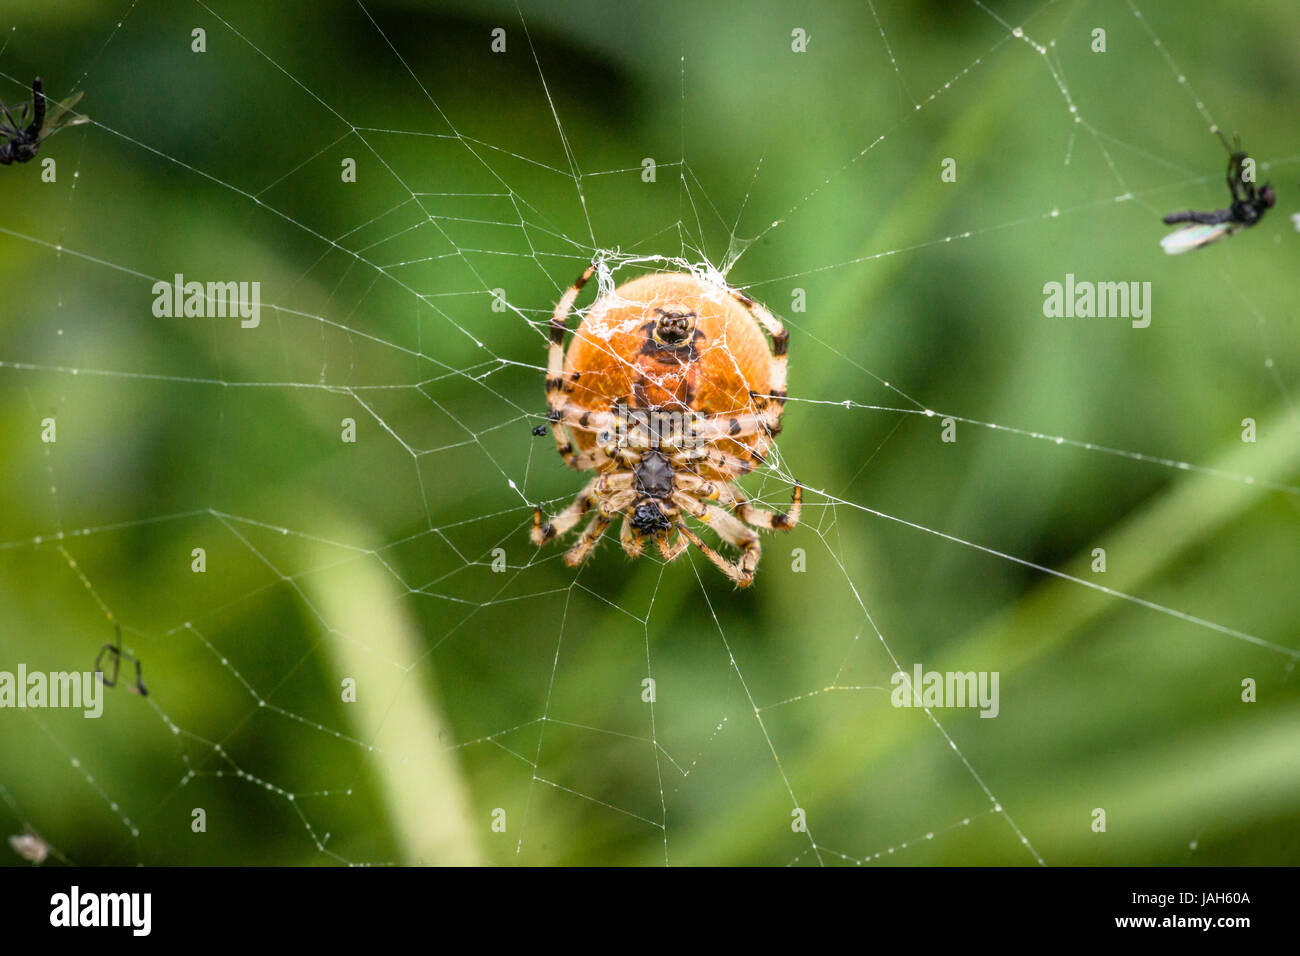 Grosse araignée dans un site web avec les moustiques Banque D'Images